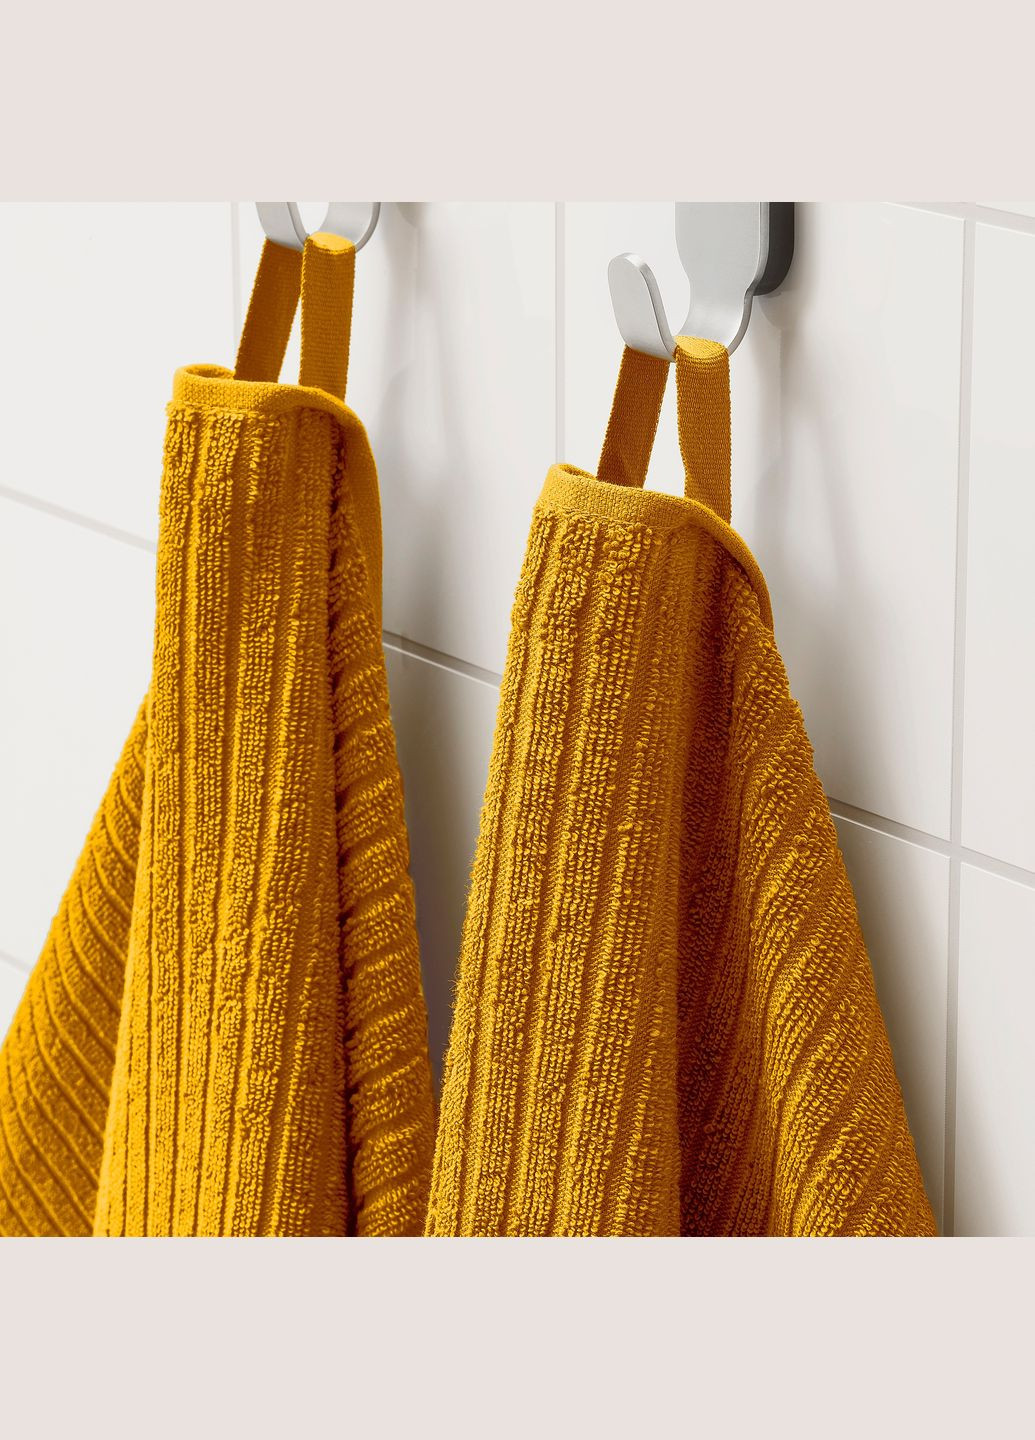 IKEA рушник желтый производство -